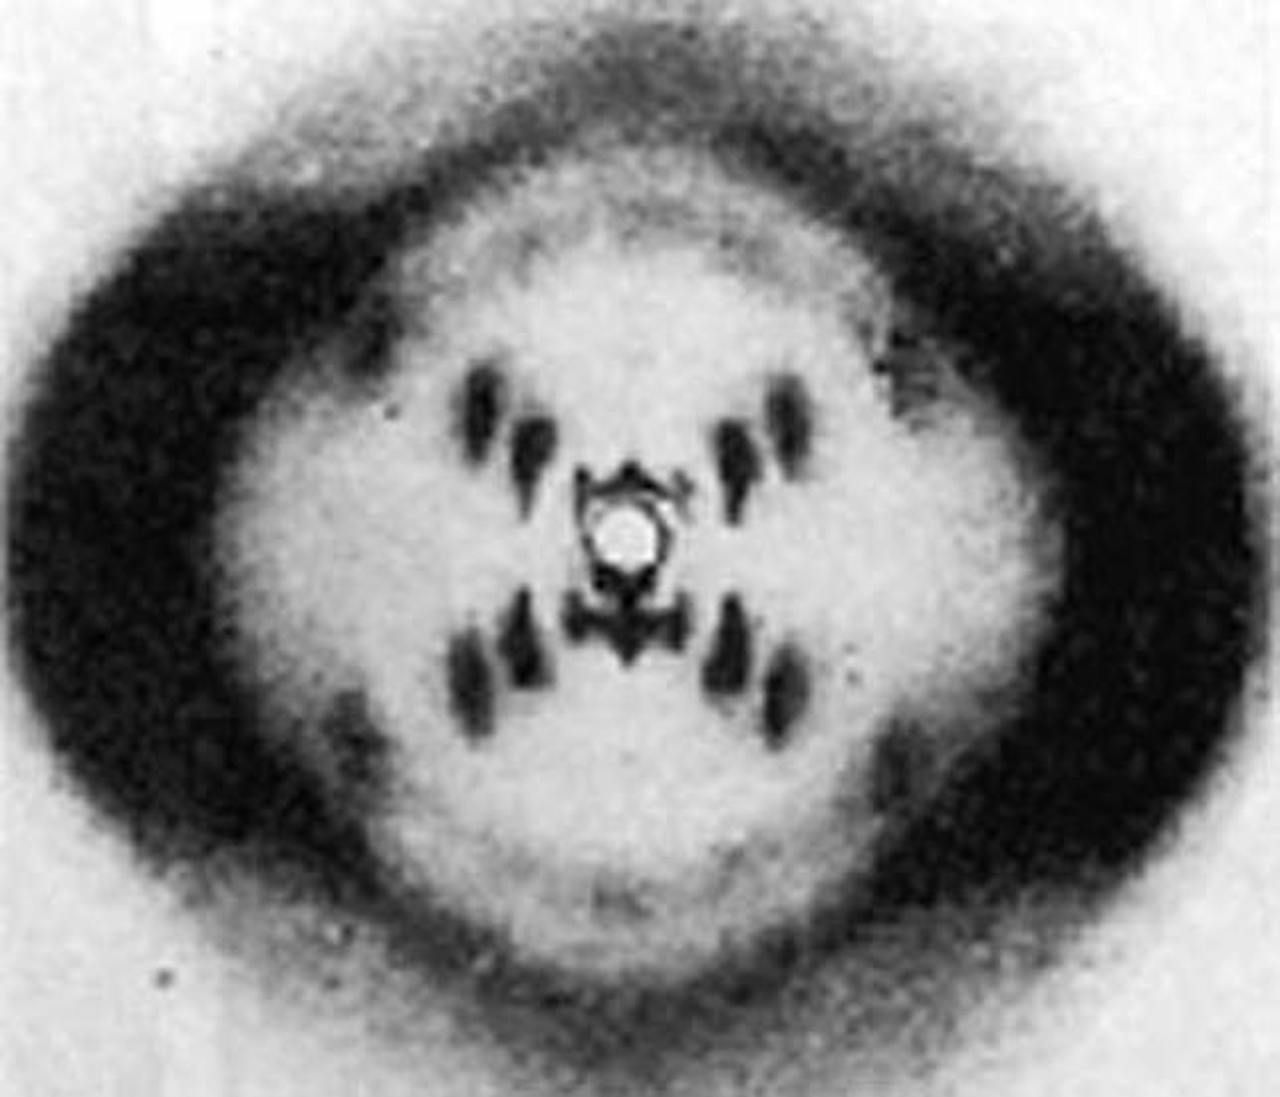 Röntgenfoto met zwart-wit beeld van dubbele helix-structuur.